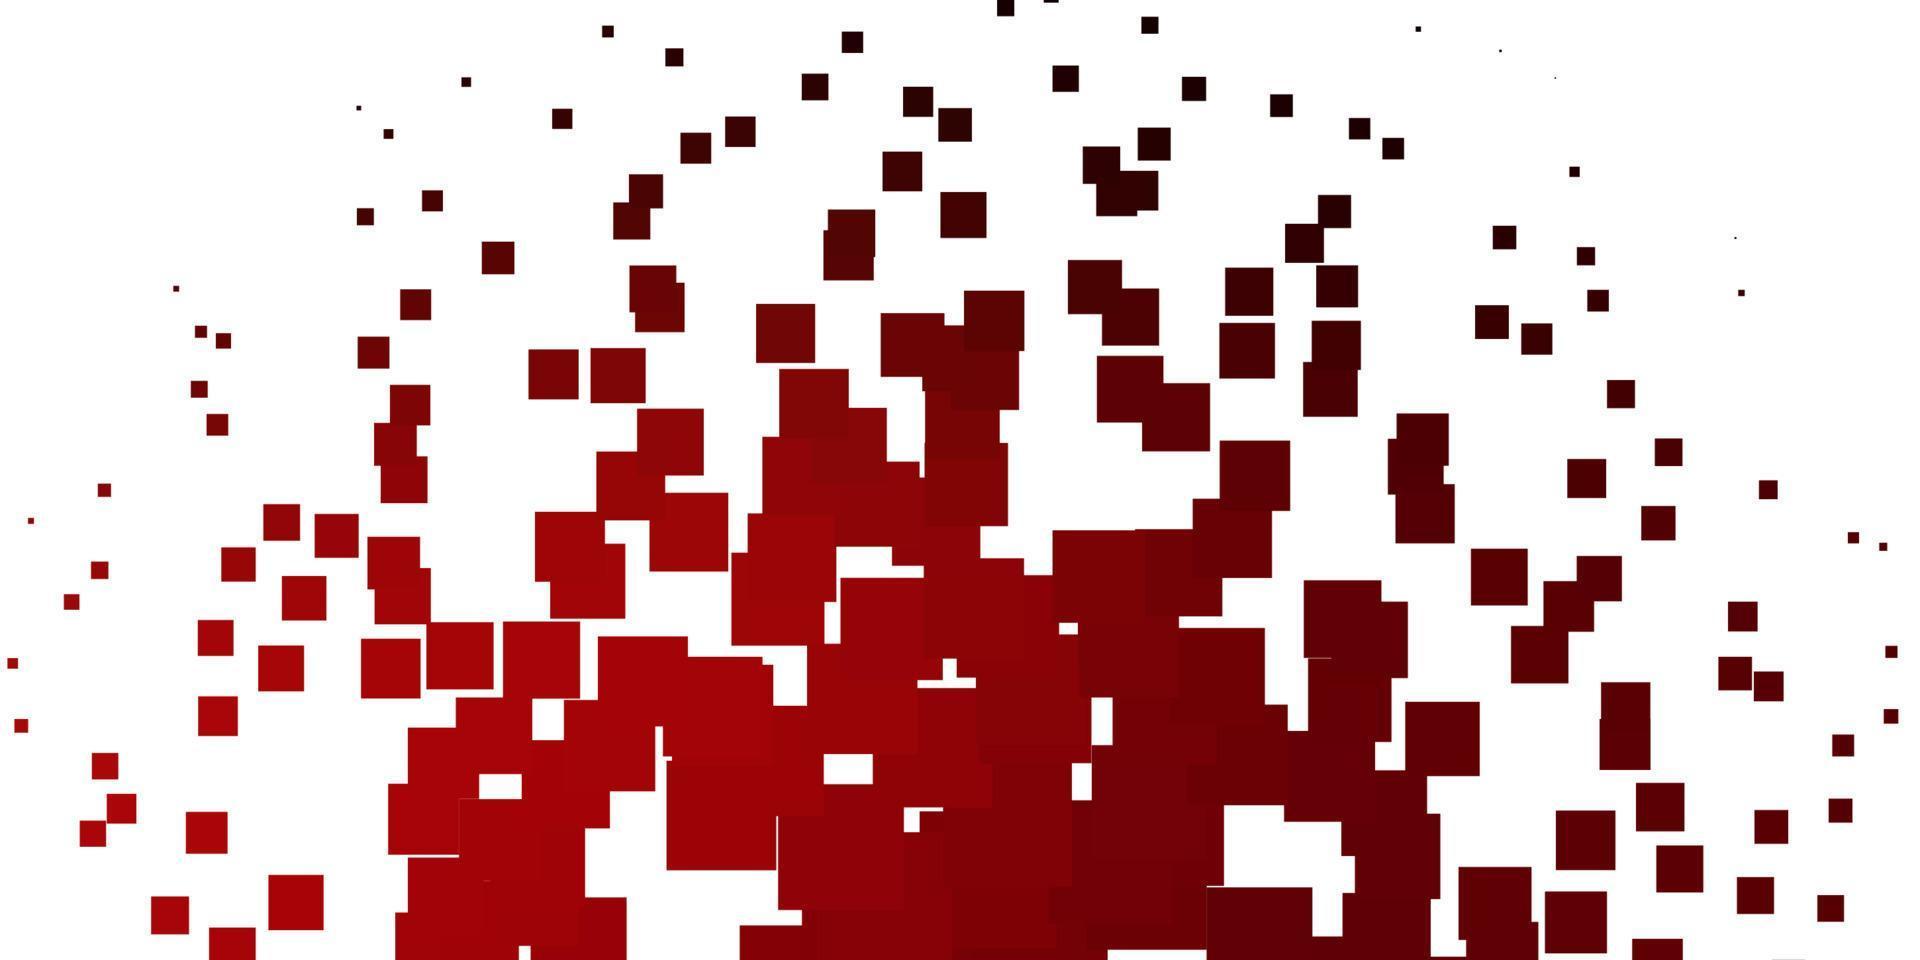 toile de fond de vecteur rouge clair avec des rectangles.